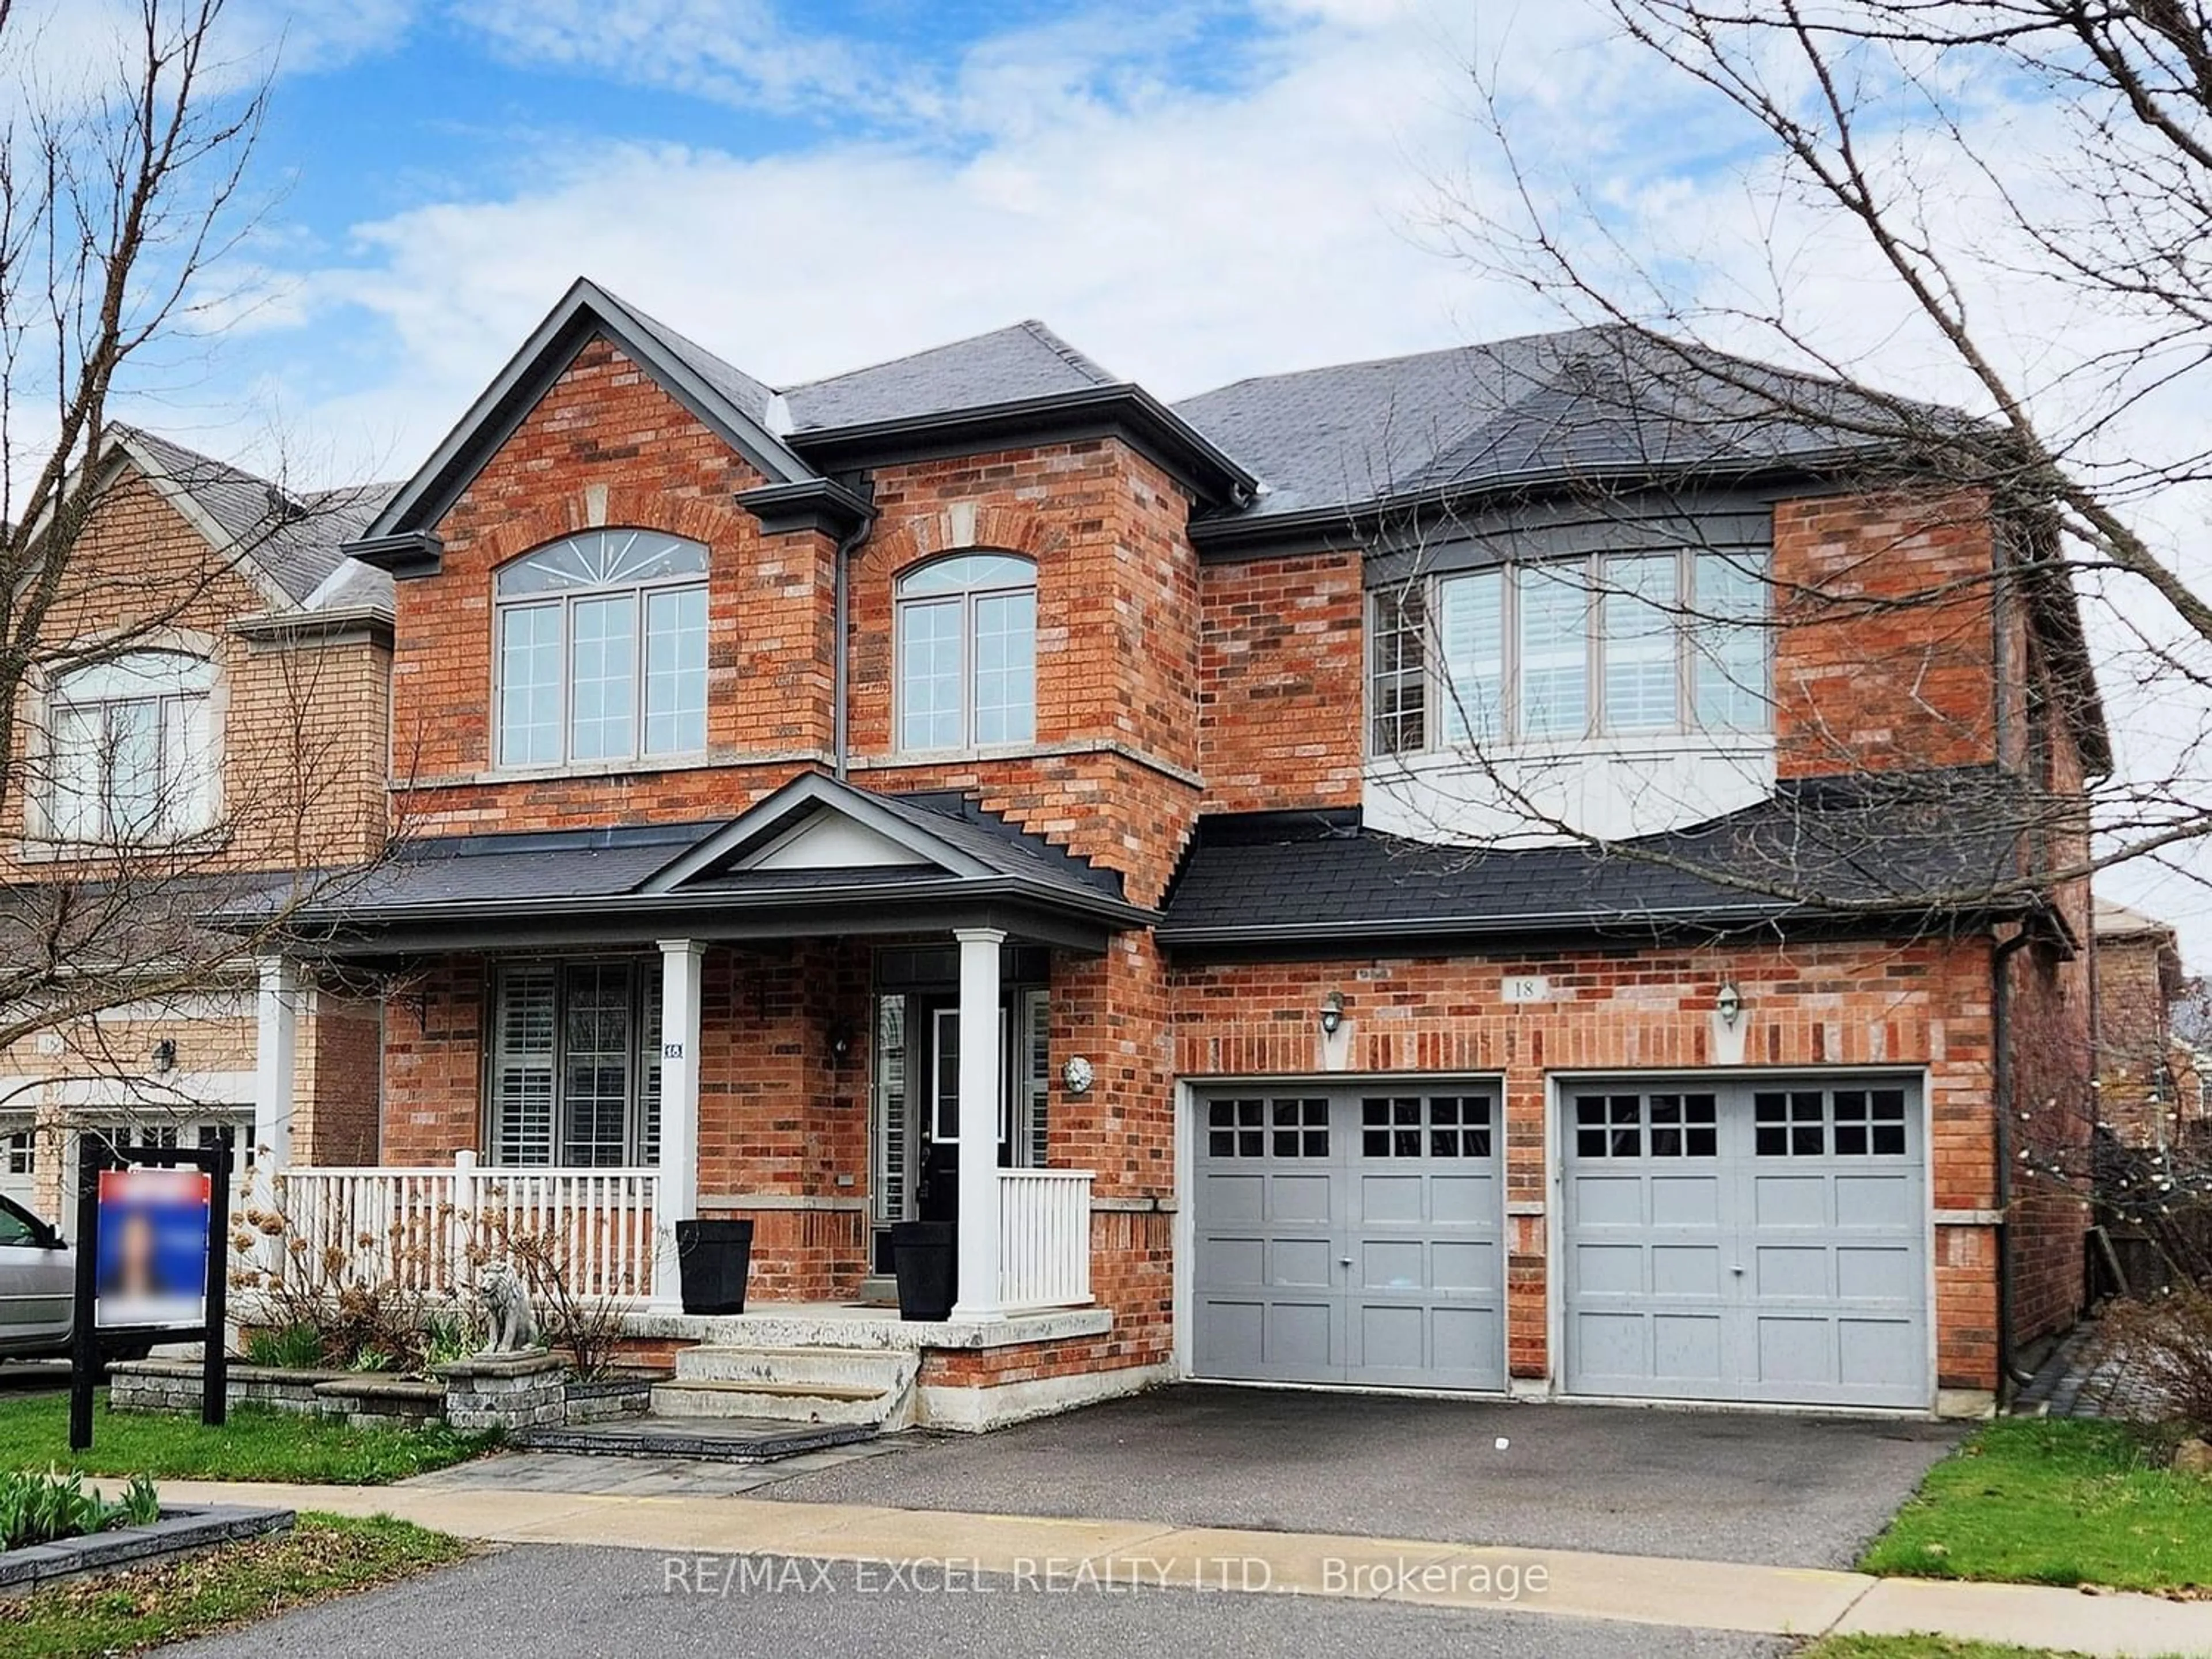 Home with brick exterior material for 18 Arbour Dr, Markham Ontario L6E 0H3